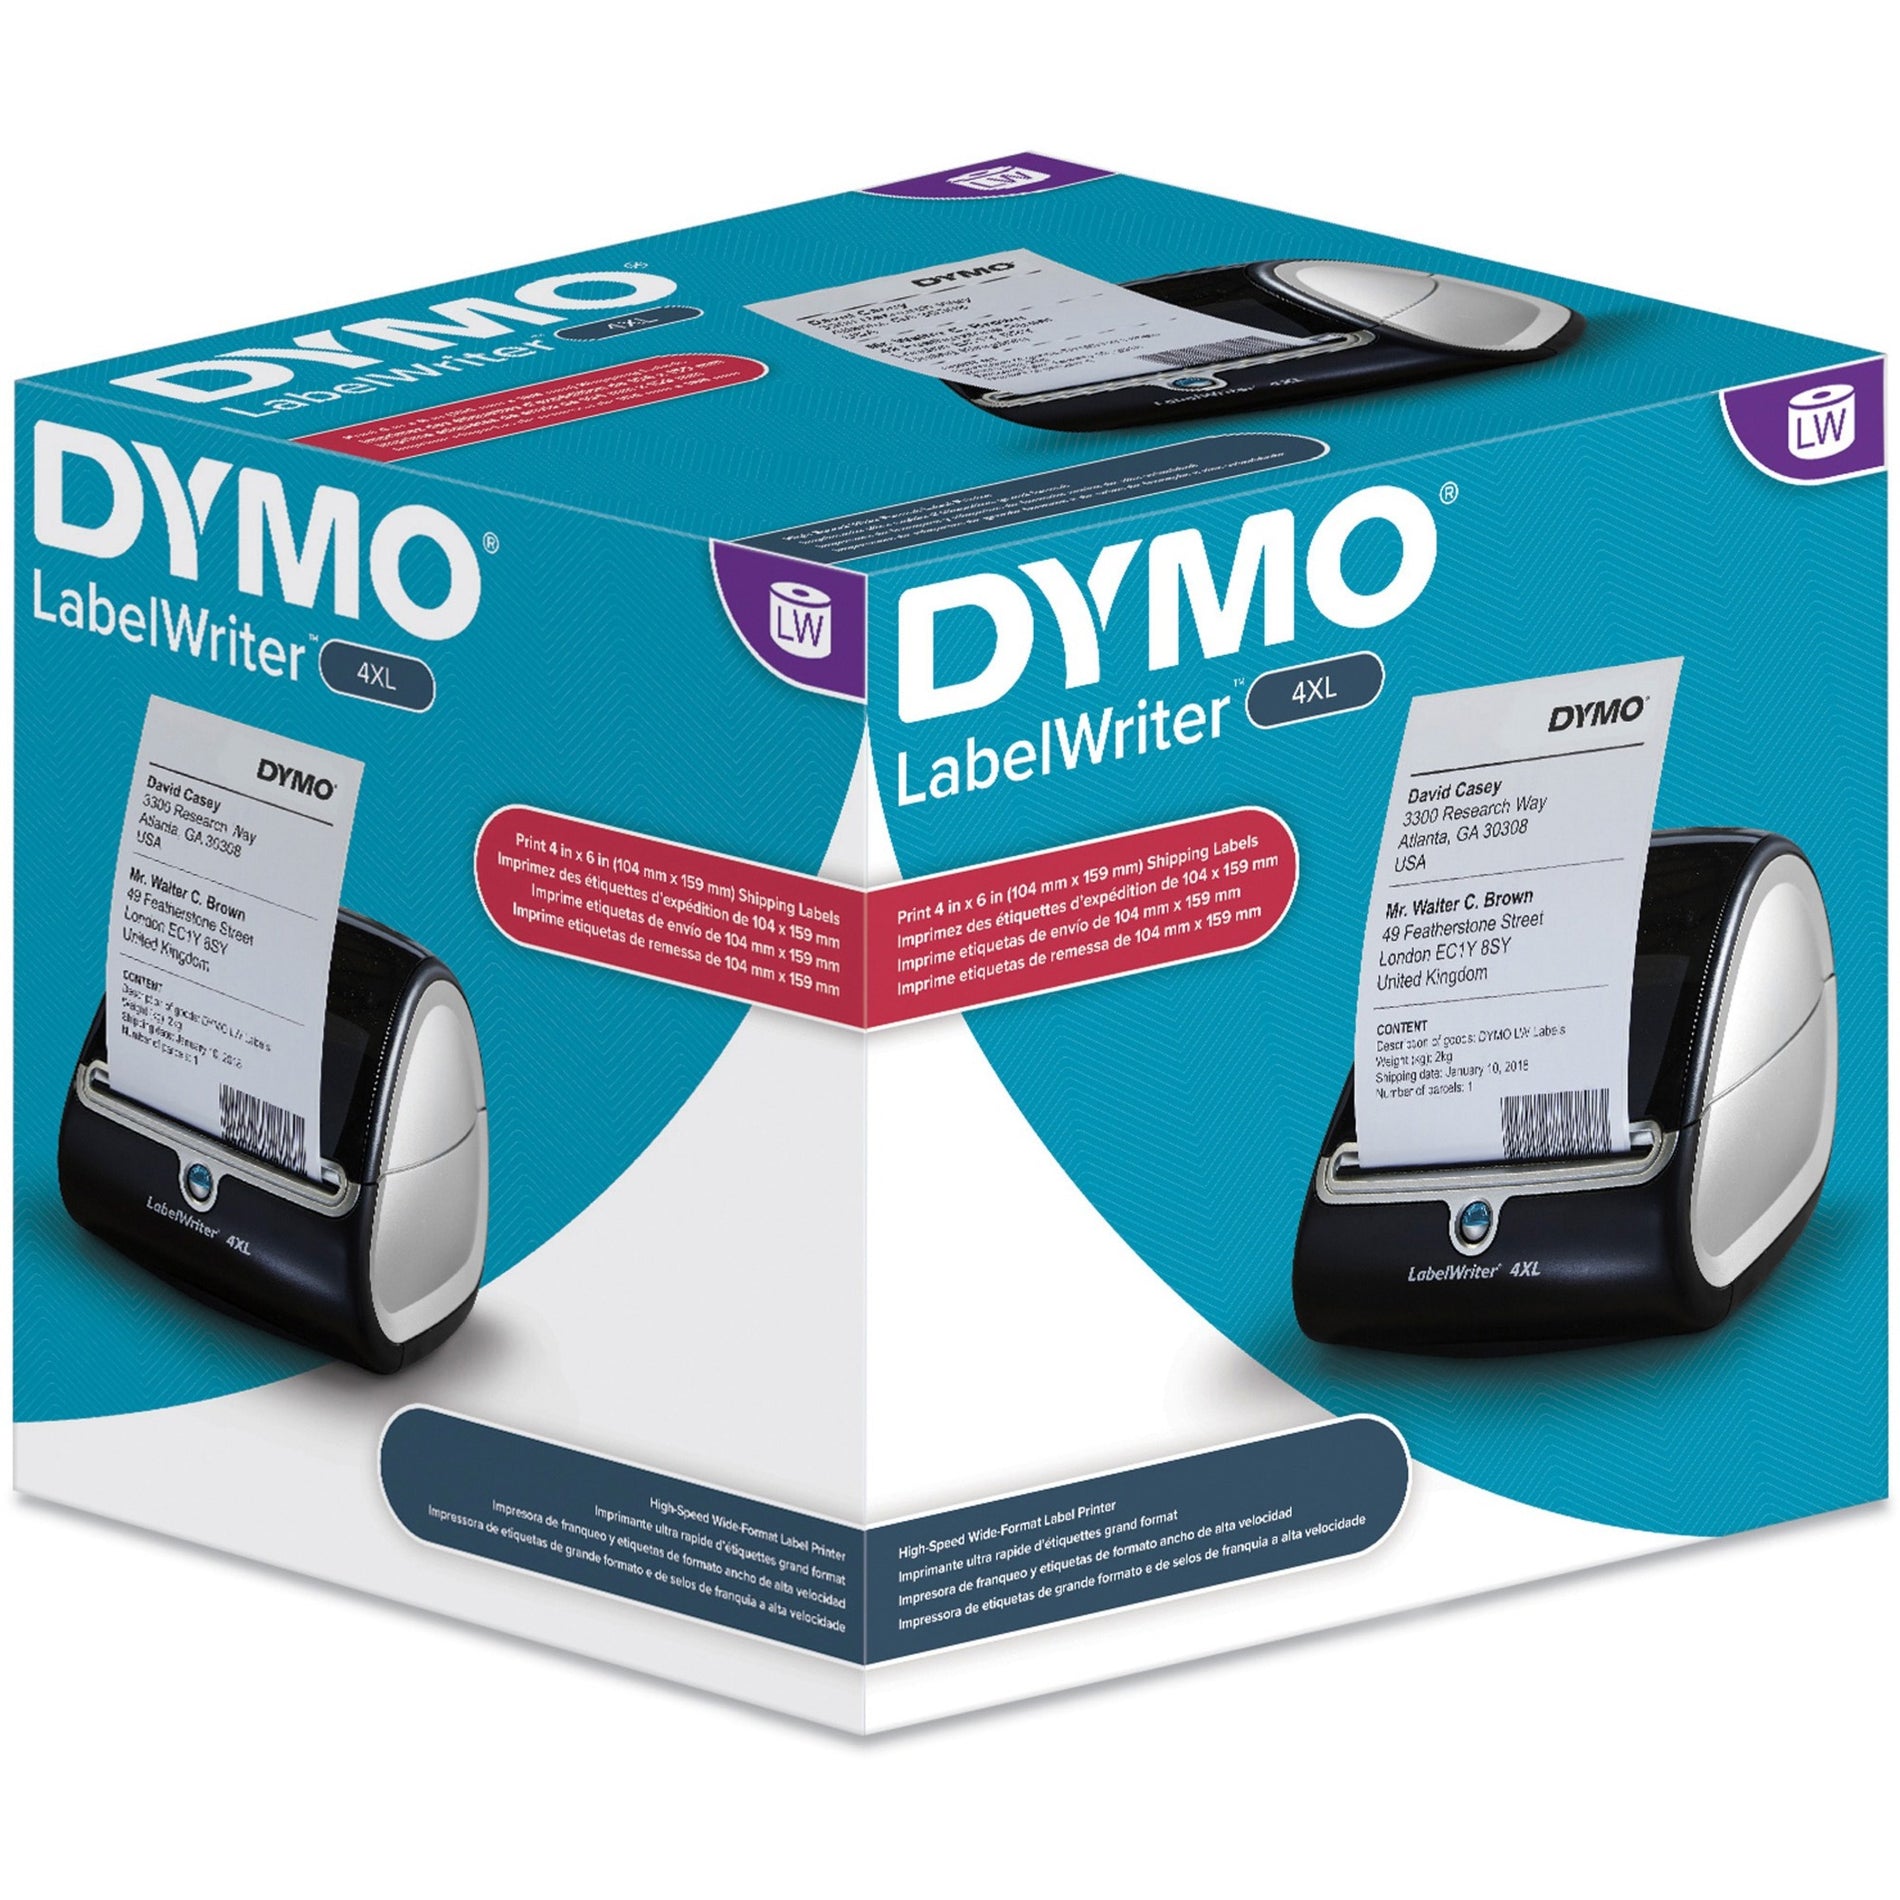 Dymo 1755120 LabelWriter 4XL 4-Inch Printer, Prints 3/8"-4" Wide, 53 Labels P/M, BK/Silver